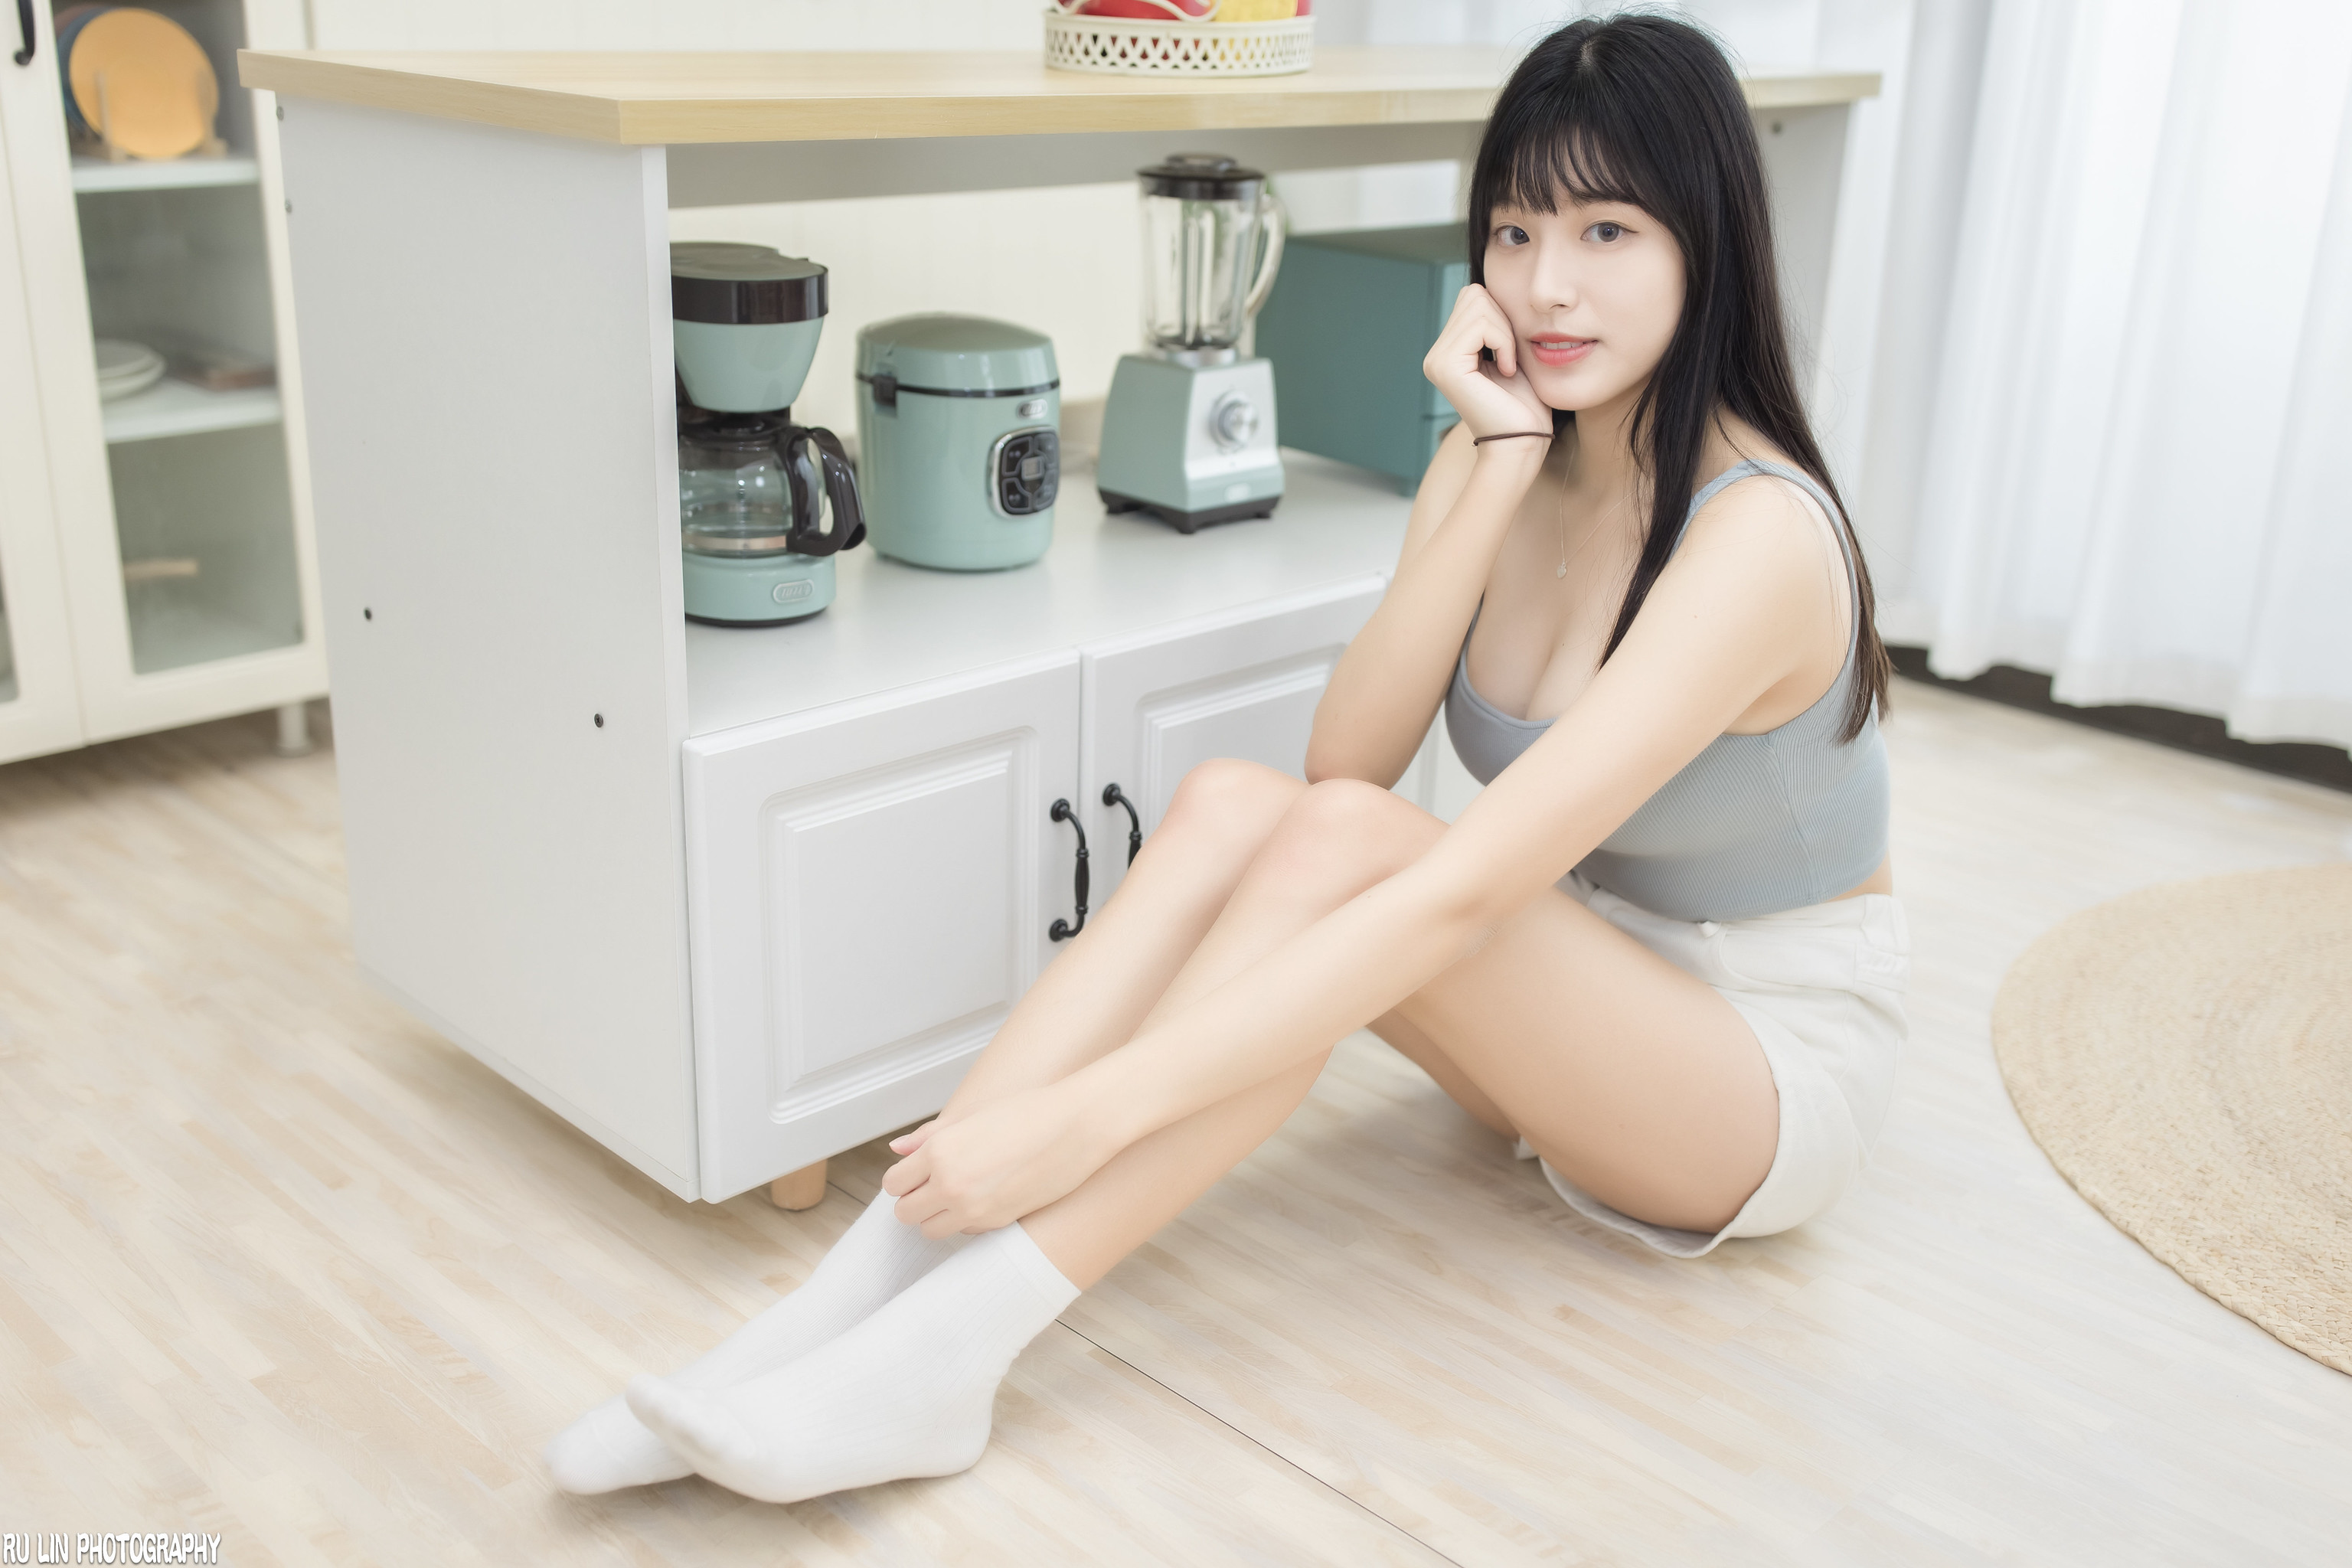 Ru Lin Women Asian Dark Hair Legs Bright 3072x2048